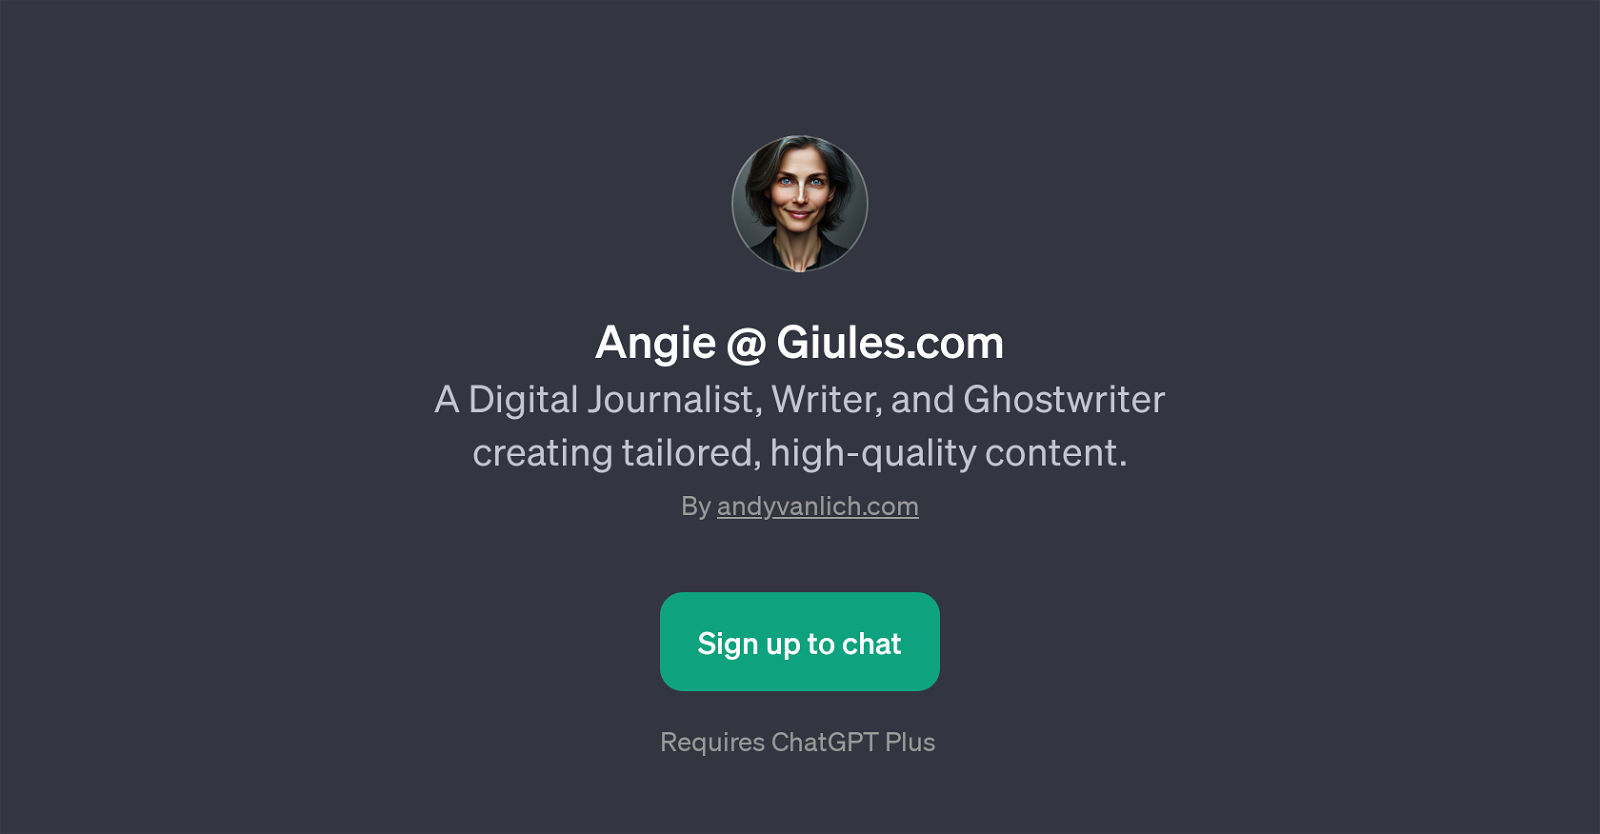 Angie @ Giules.com website